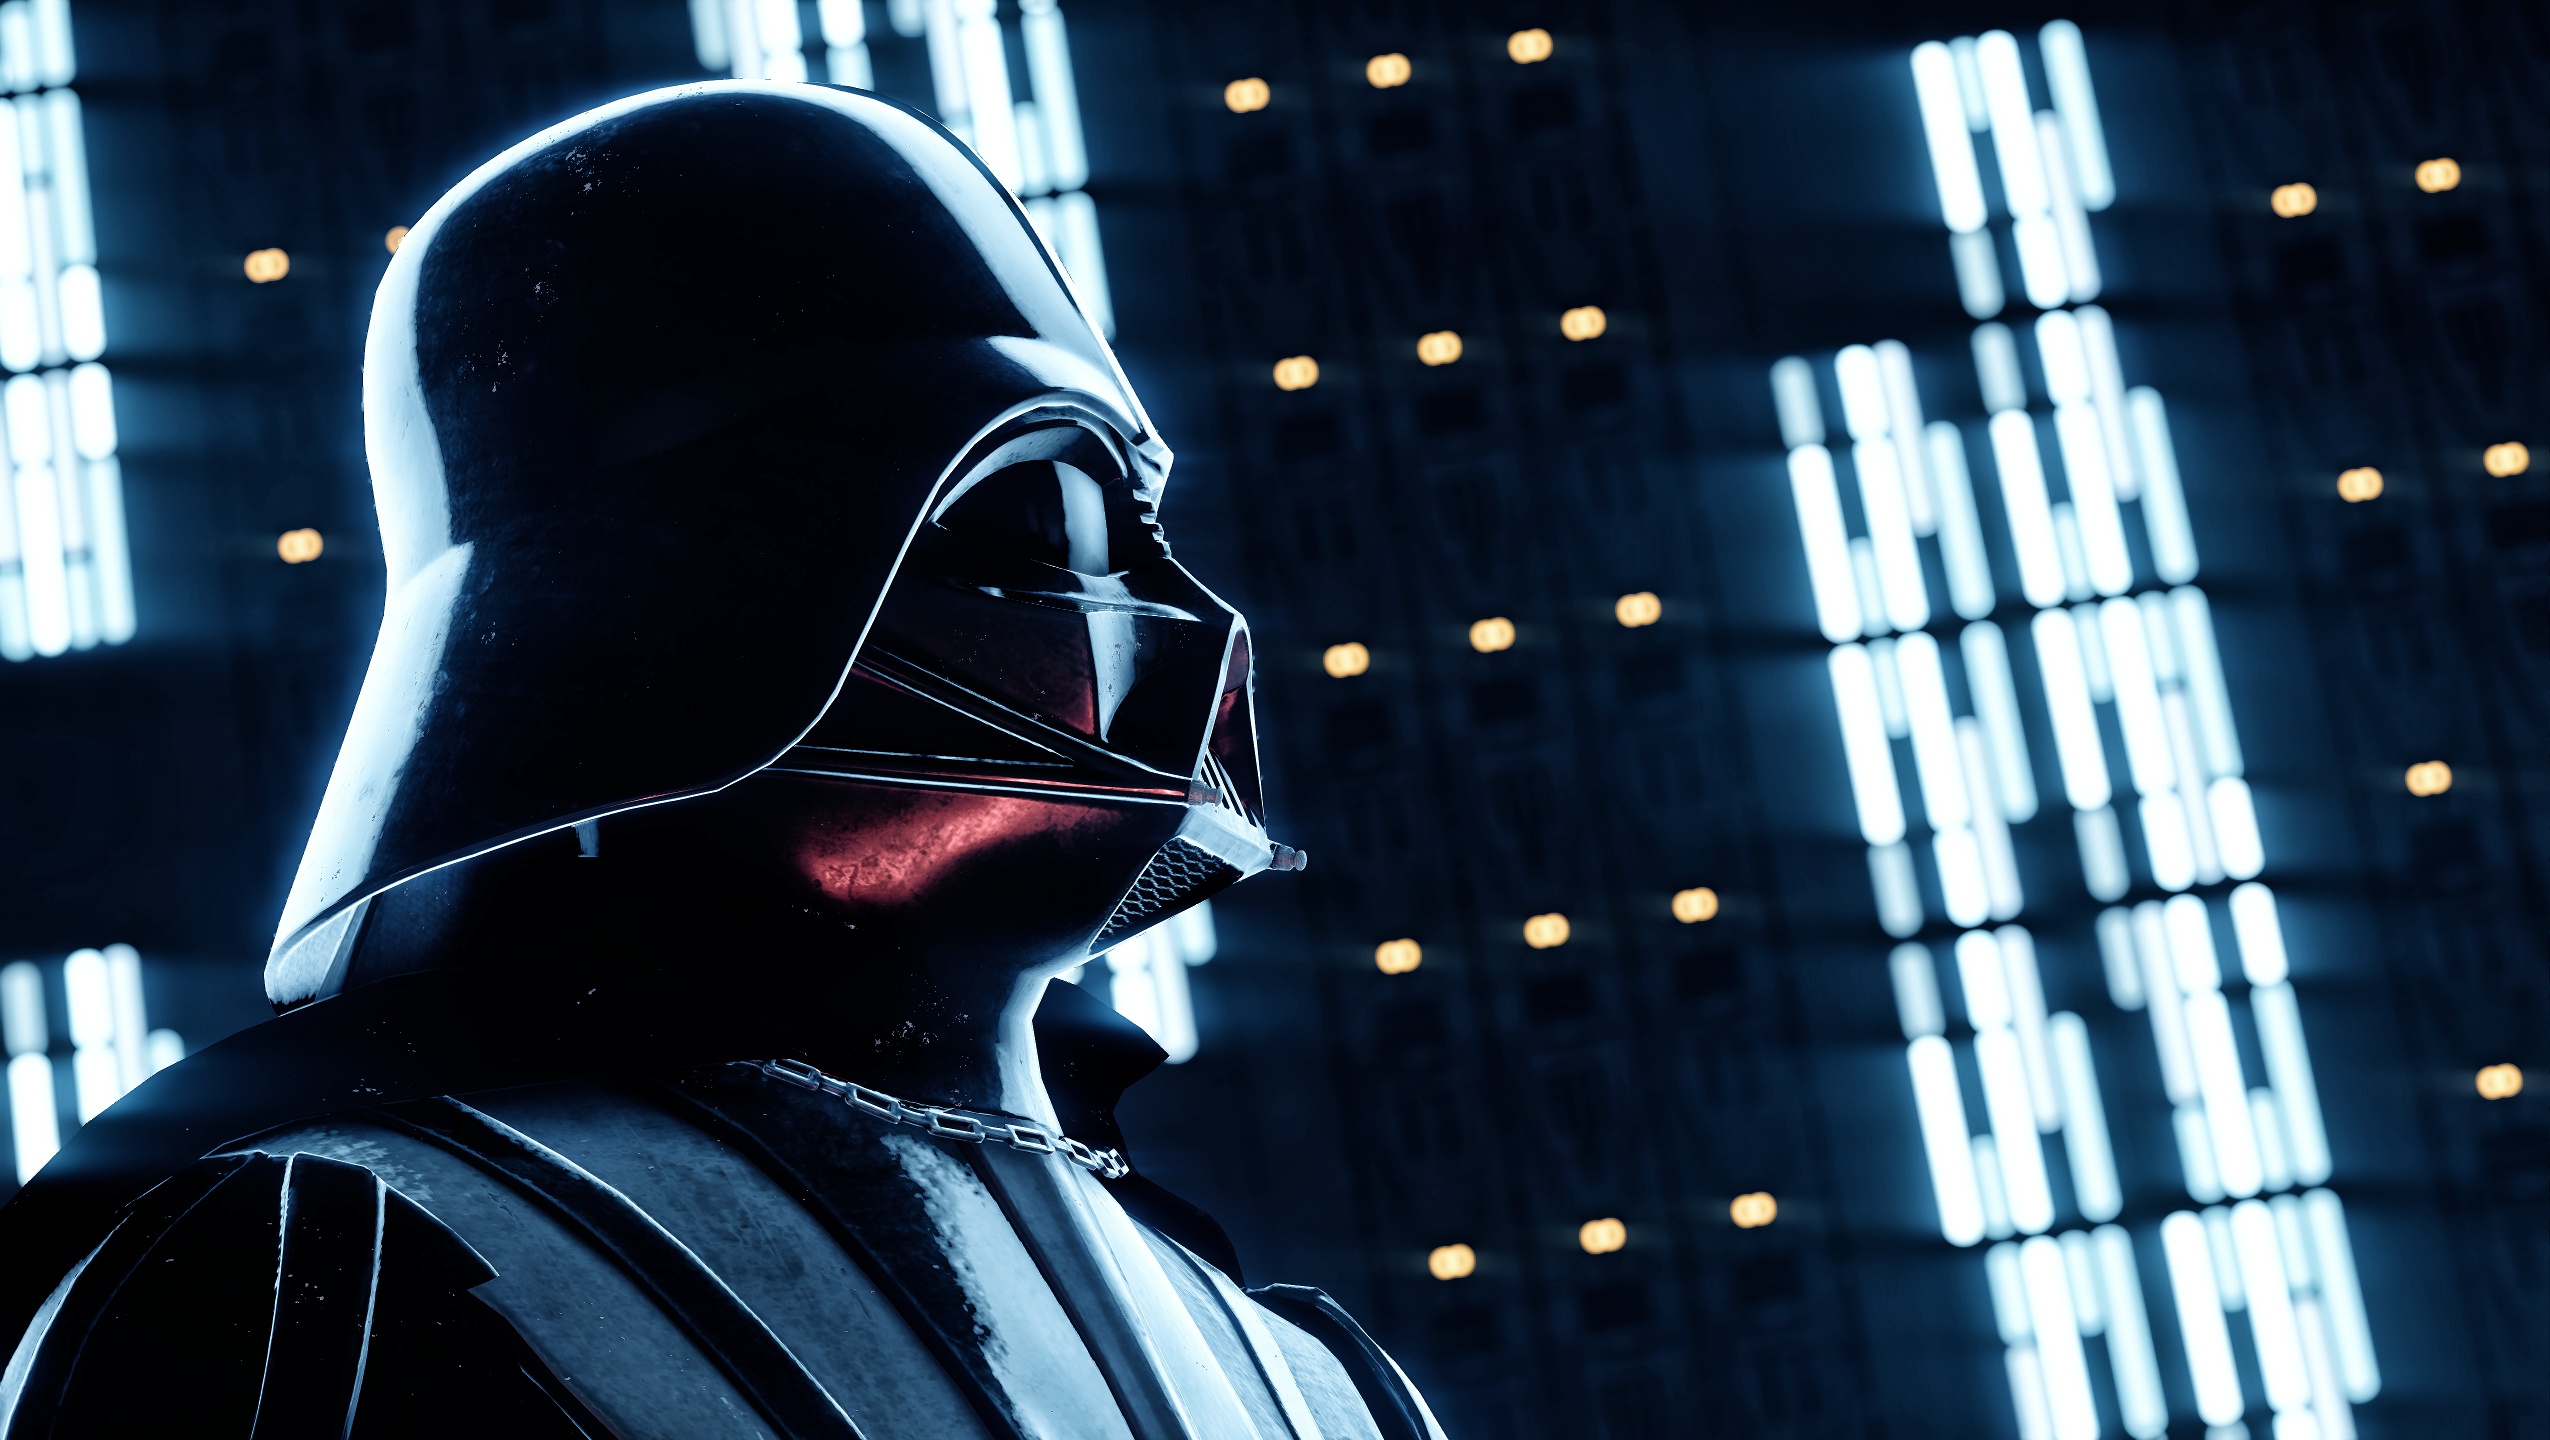 Star Wars Star Wars Battlefront Ii Video Games Darth Vader Sith Star Wars Villains 2550x1440